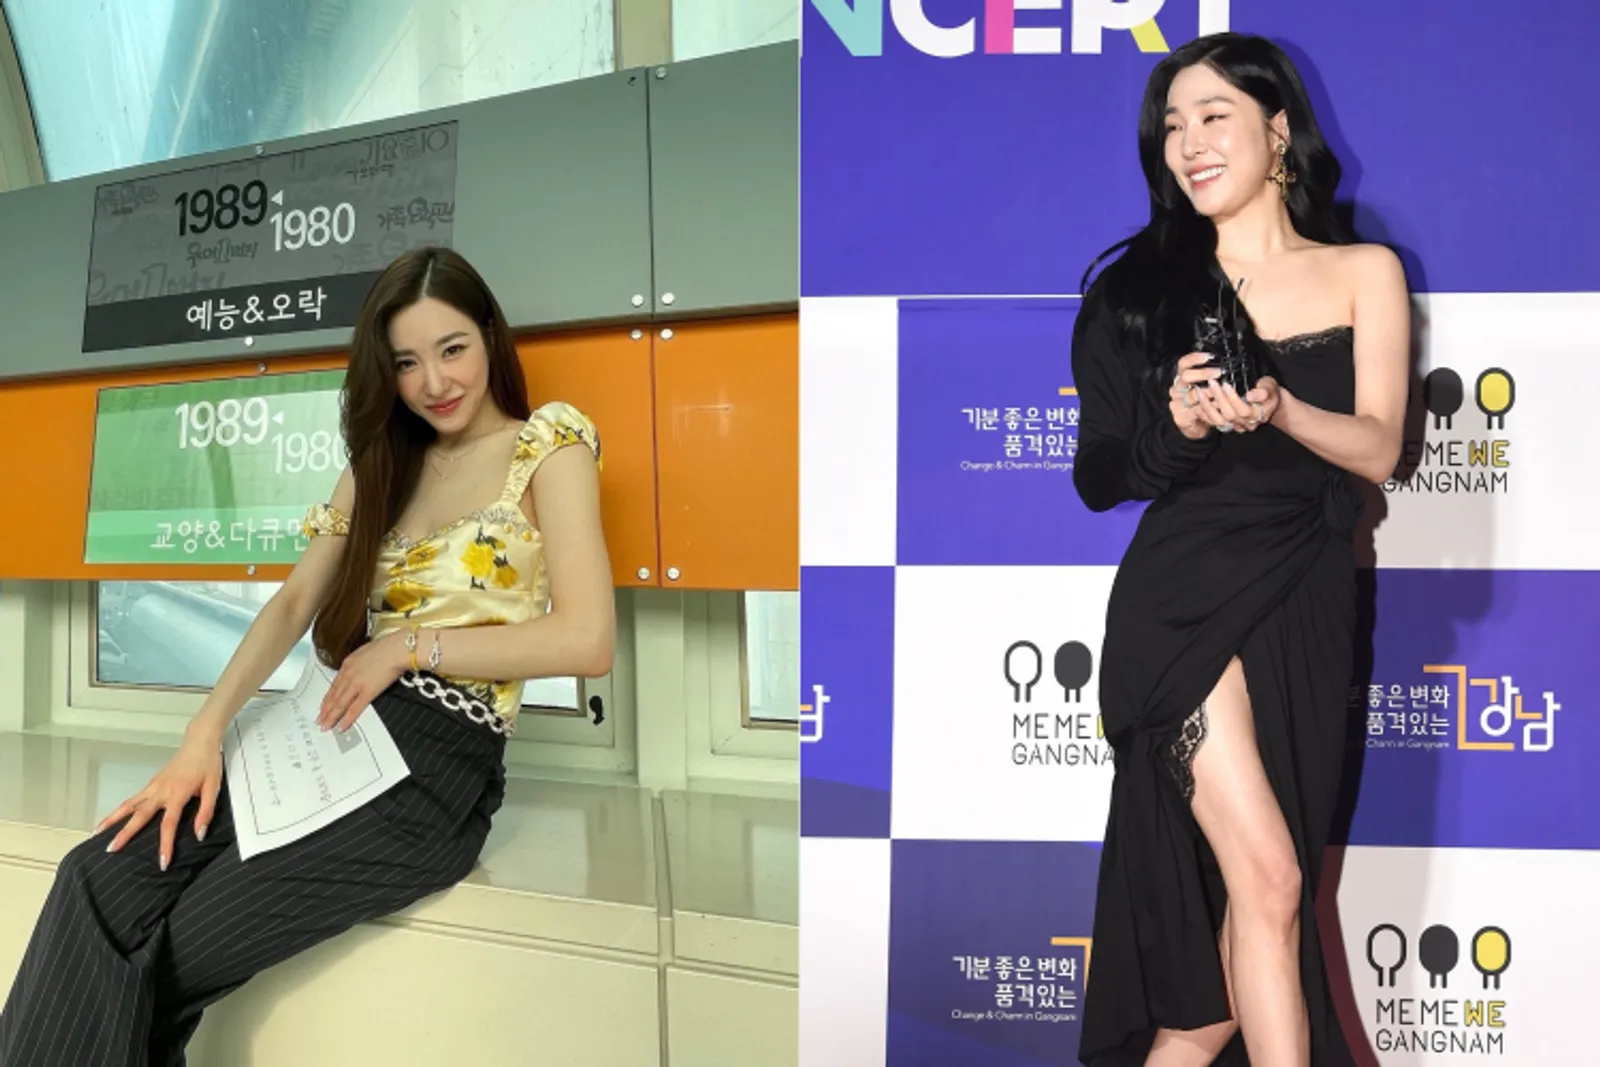 Begini Perbandingan Gaya Idol Korea di Variety Show vs Karpet Merah